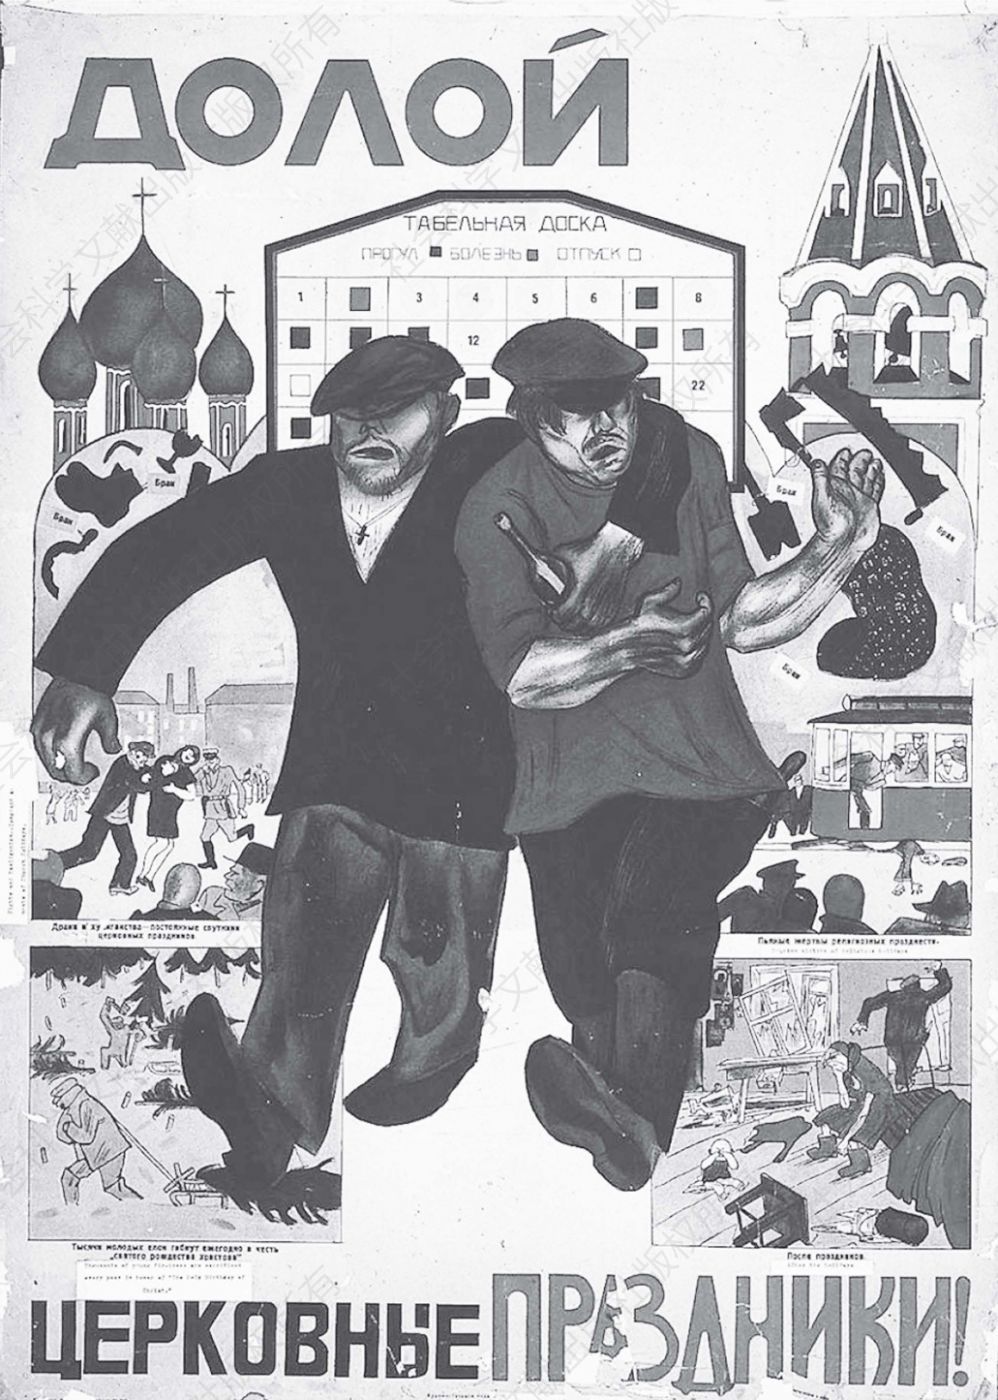 早期的苏联宣传海报——“拒绝教会庆祝！”